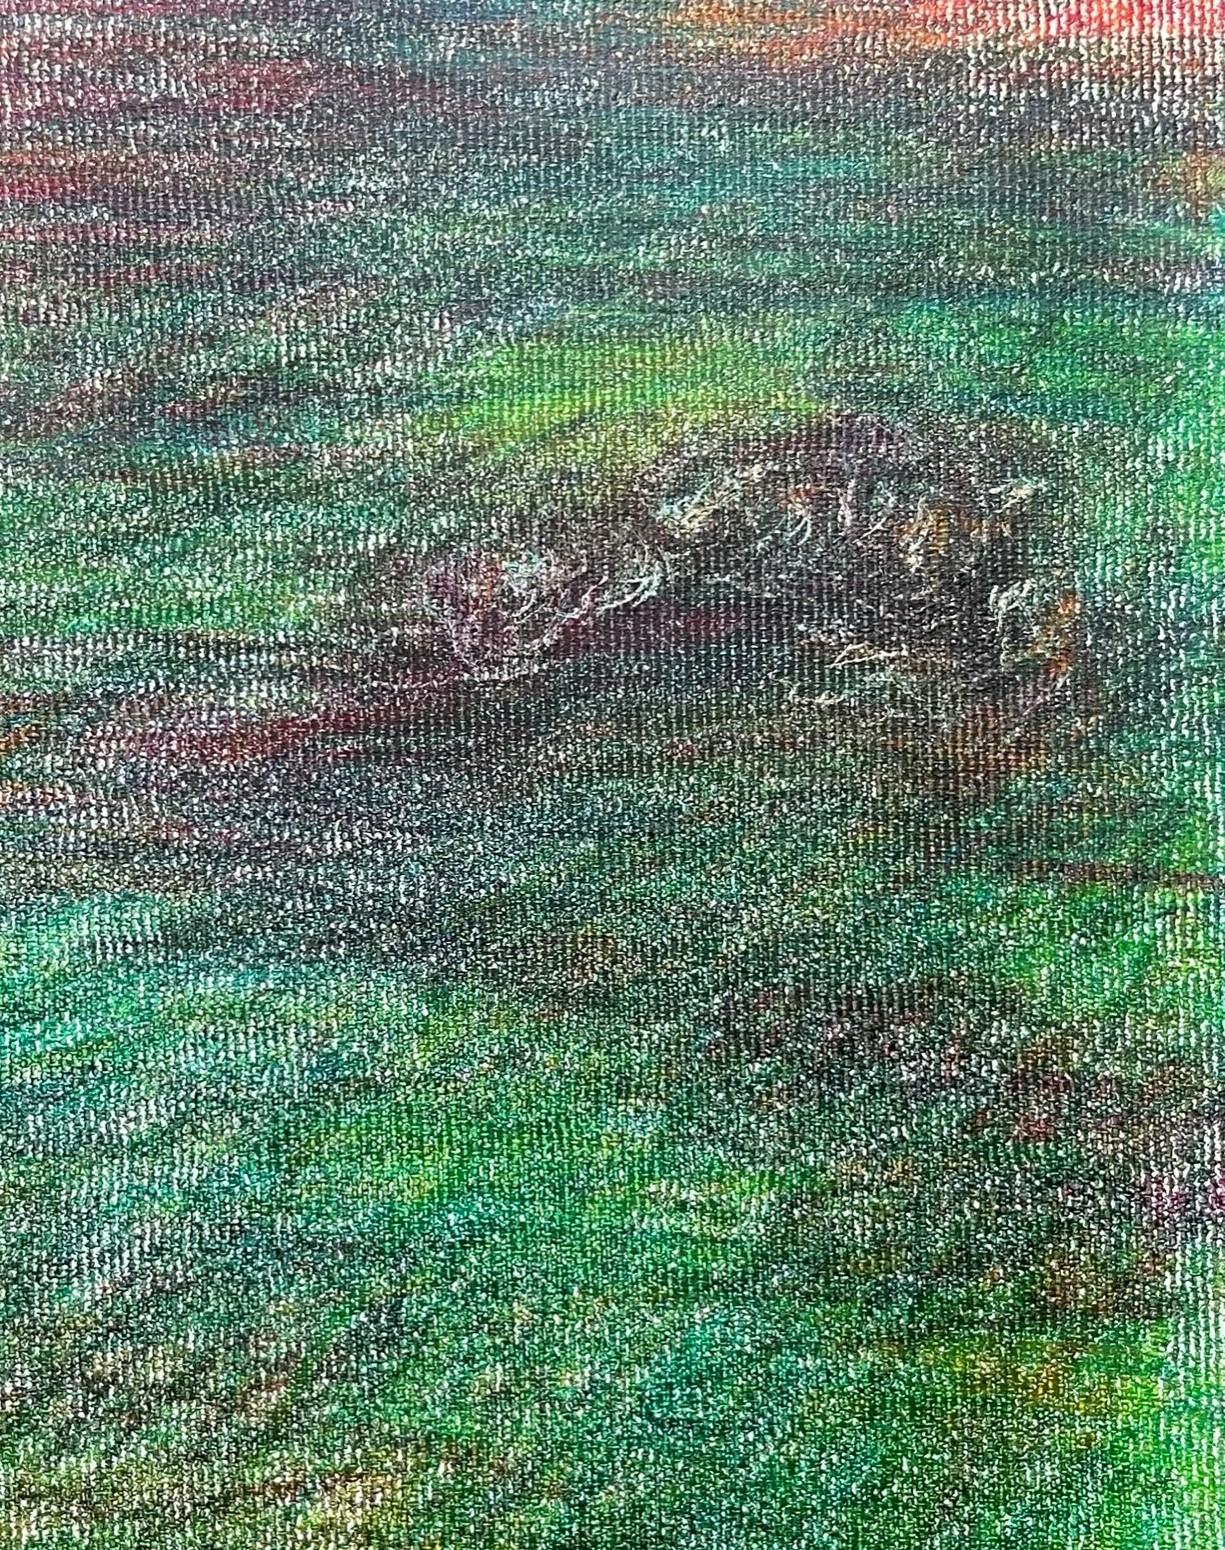 Leiche auf dem Feld #14, 2022
Farbstift auf Leinwand
9,84 H x 6,29 W Zoll.
25 H x 16 B cm
Signiert auf der Rückseite

Zsolt Berszán verkörpert in seinen Werken die Auflösung des menschlichen Körpers durch das Prisma des Fragments, des zerteilten